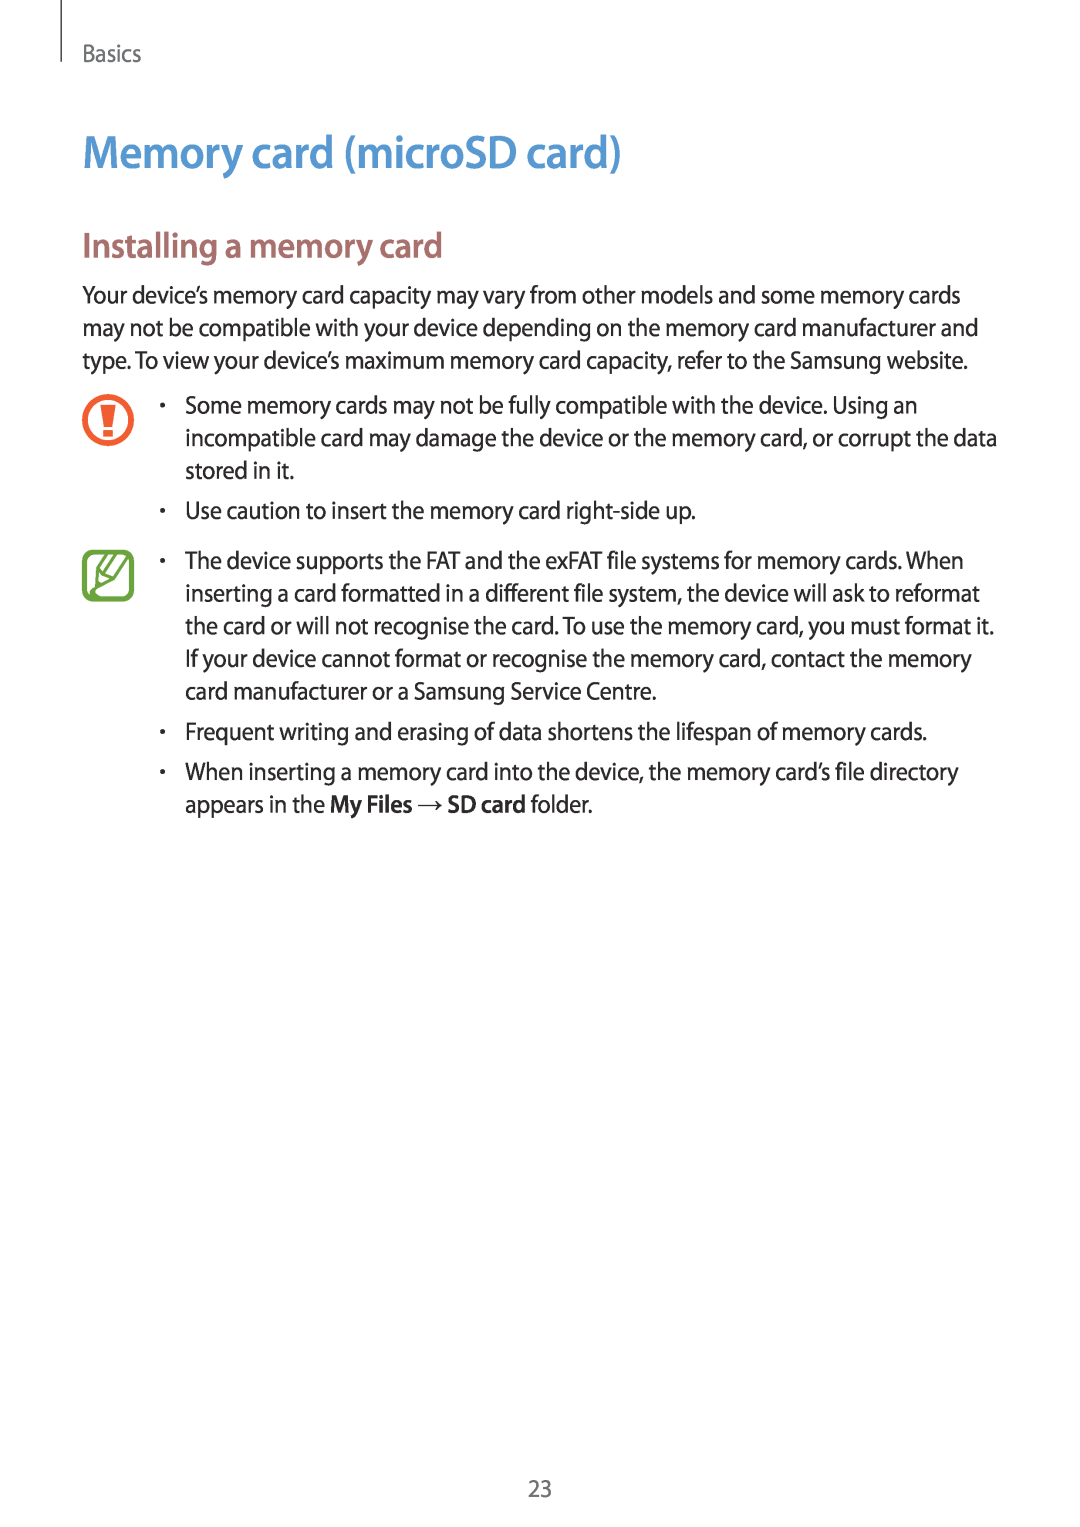 Samsung SM-A730FZVGKSA, SM-A530FZDDXEF, SM-A530FZVDXEF manual Memory card microSD card, Installing a memory card, Basics 